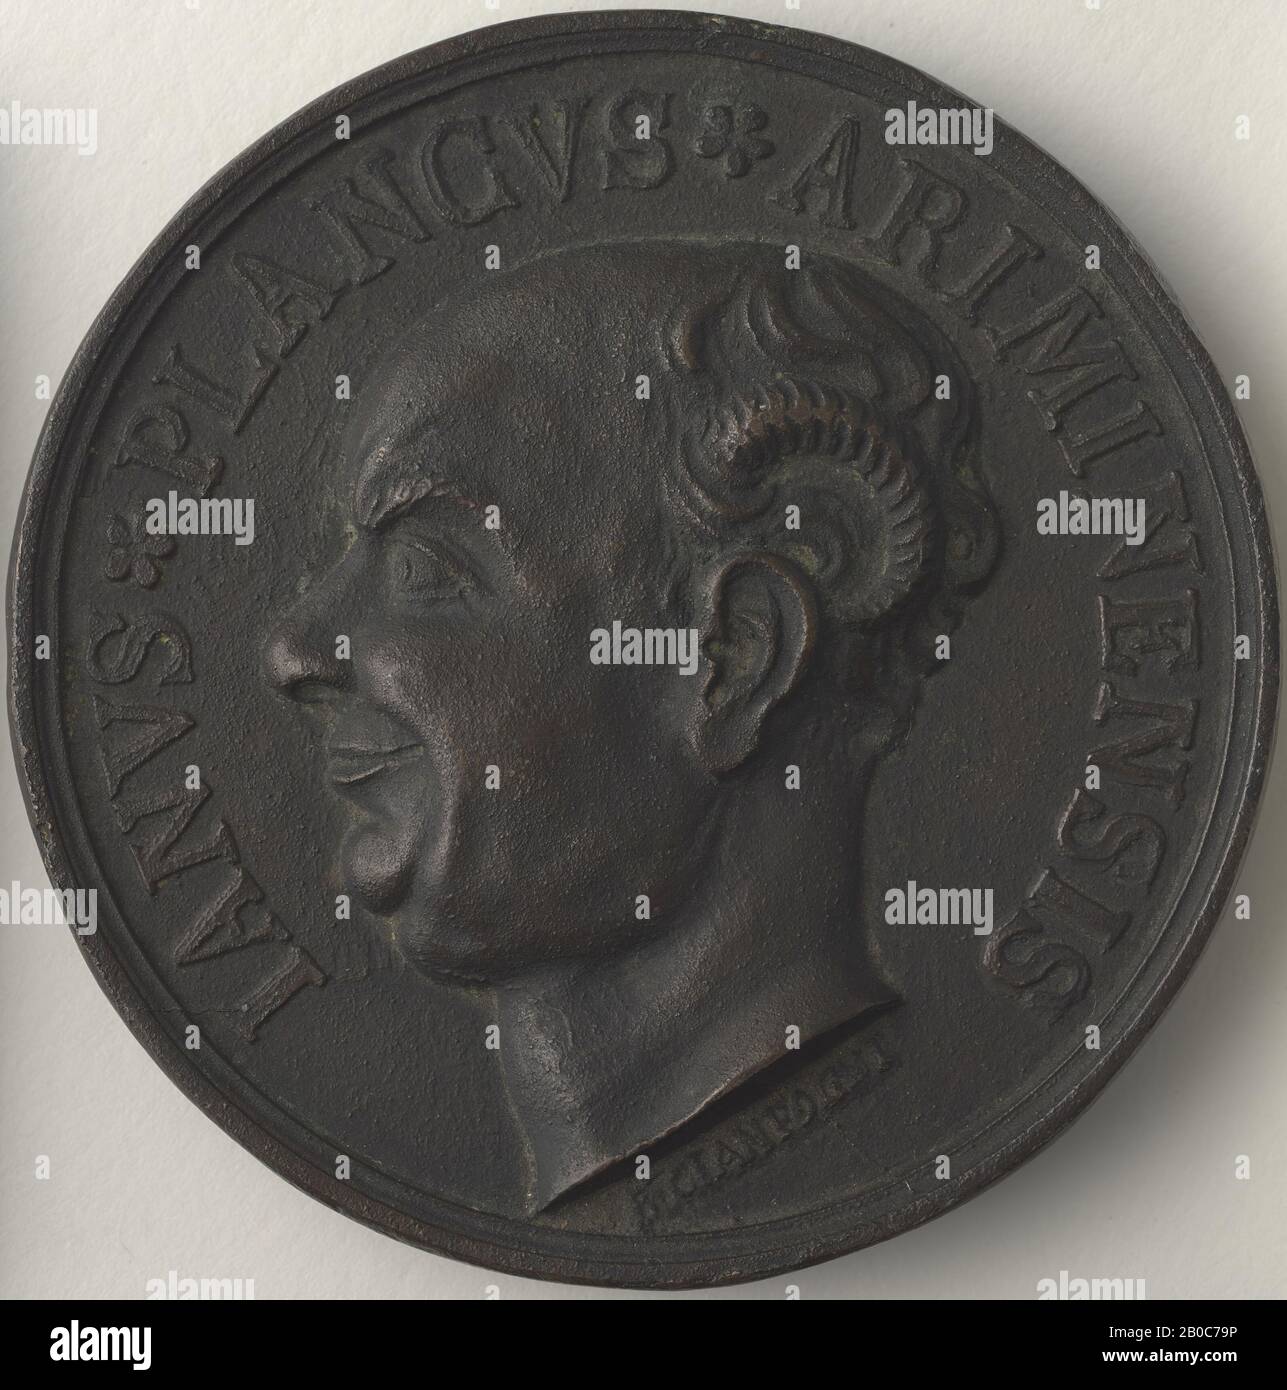 B. Ciantogni, Gian Paolo Simone Bianchi, n.d., bronzo, 3 1/4 in. (8,2 cm.) Foto Stock